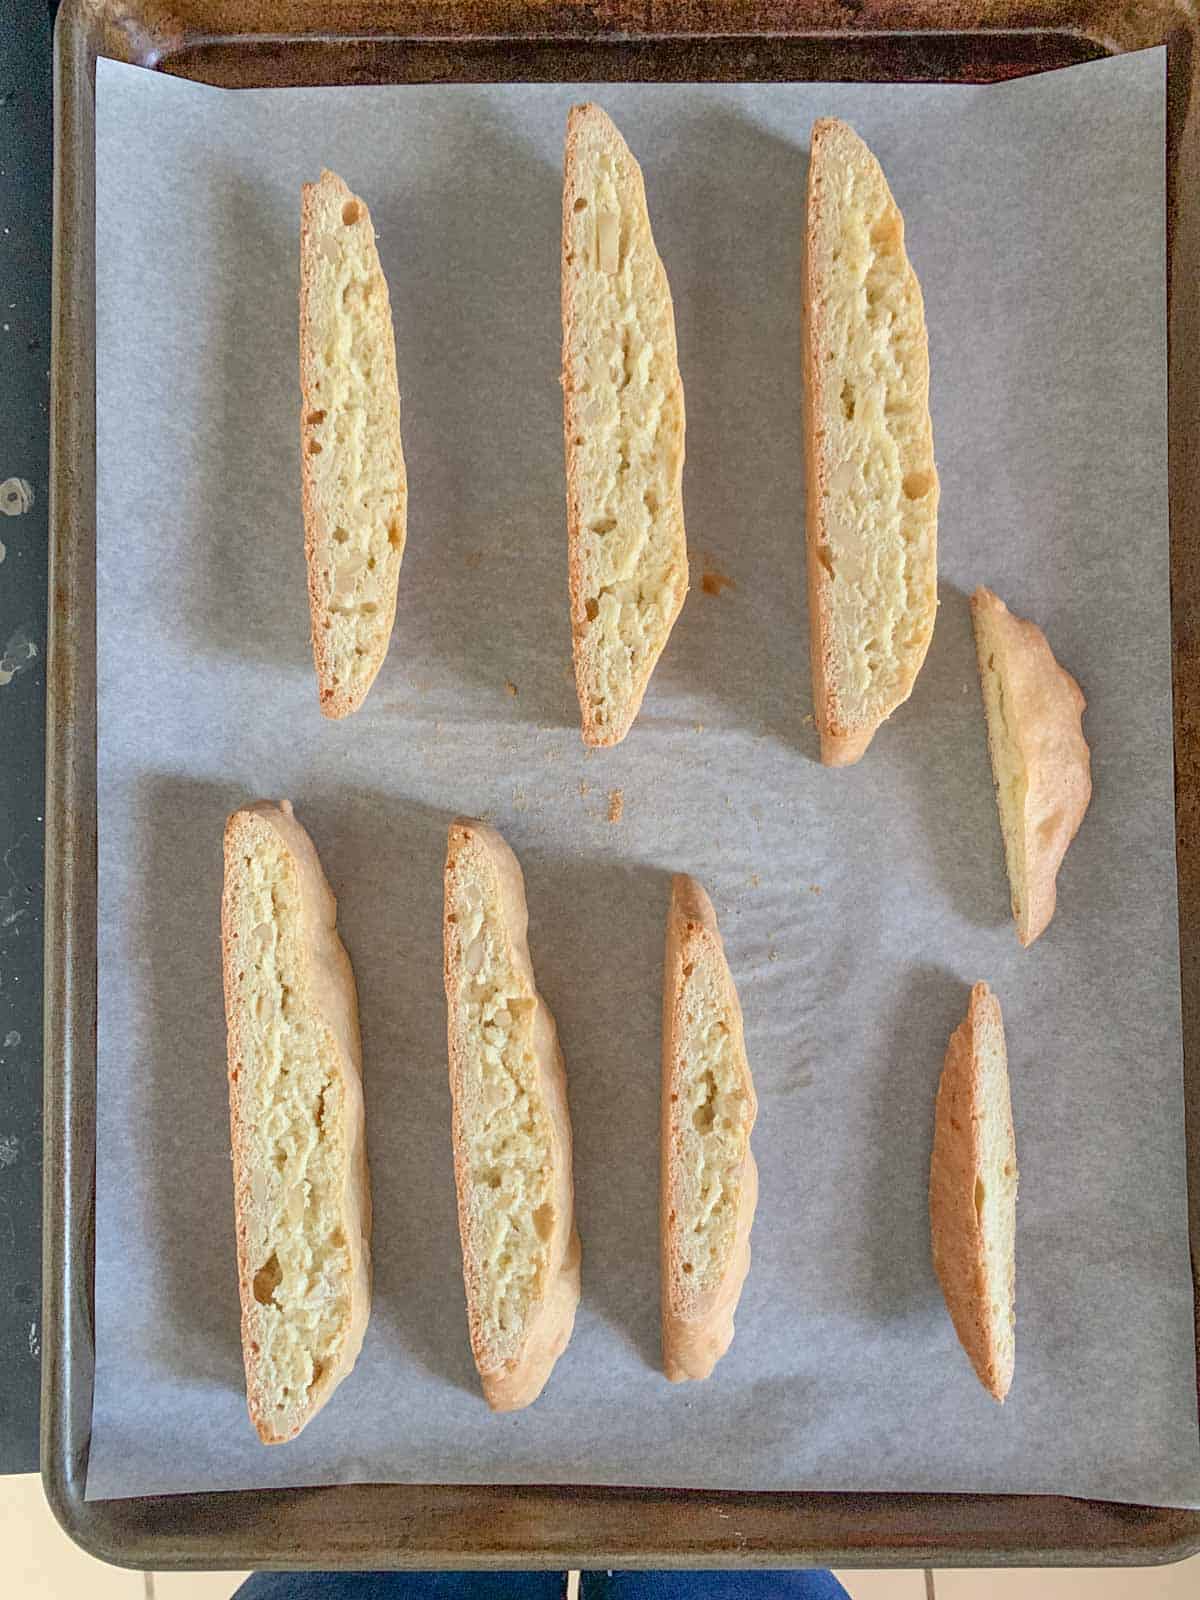 baked biscotti on sheet pan